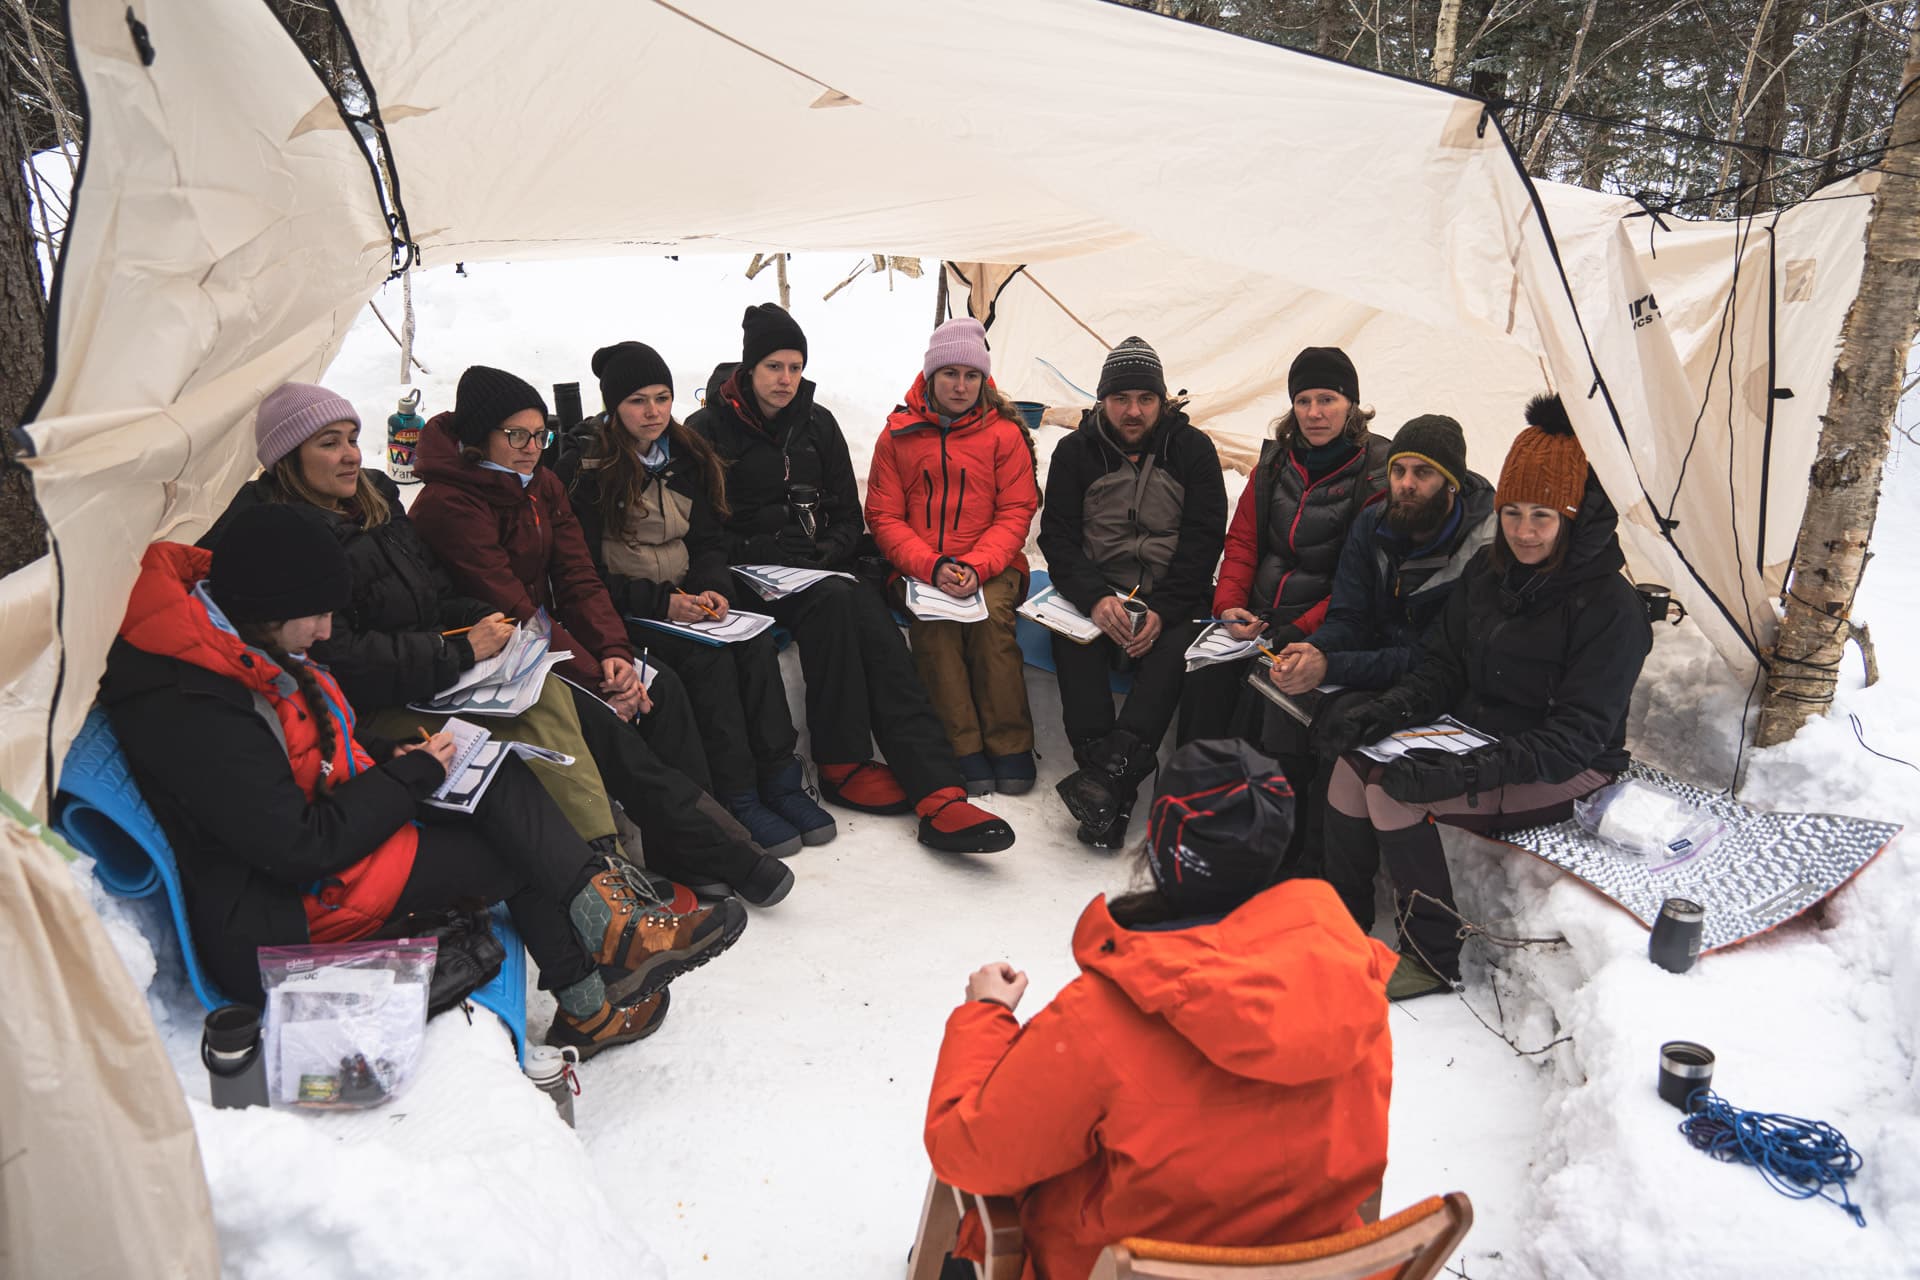 Un groupe de personnes en AEC Intervention par l'aventure et le plein air rassemblées sous une tente lors d'une expédition hivernale.